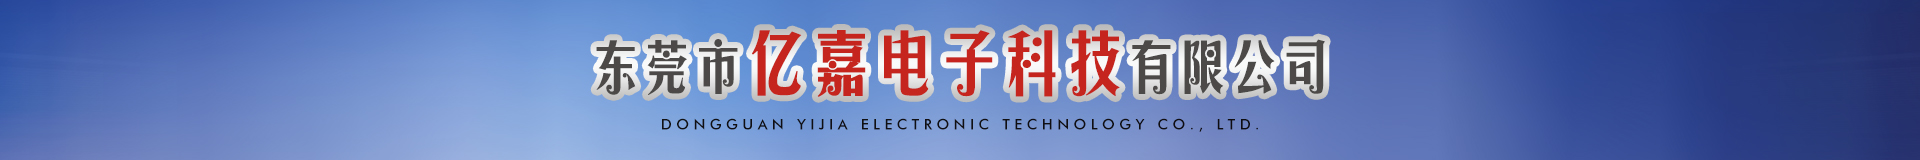 东莞市亿嘉电子科技有限公司